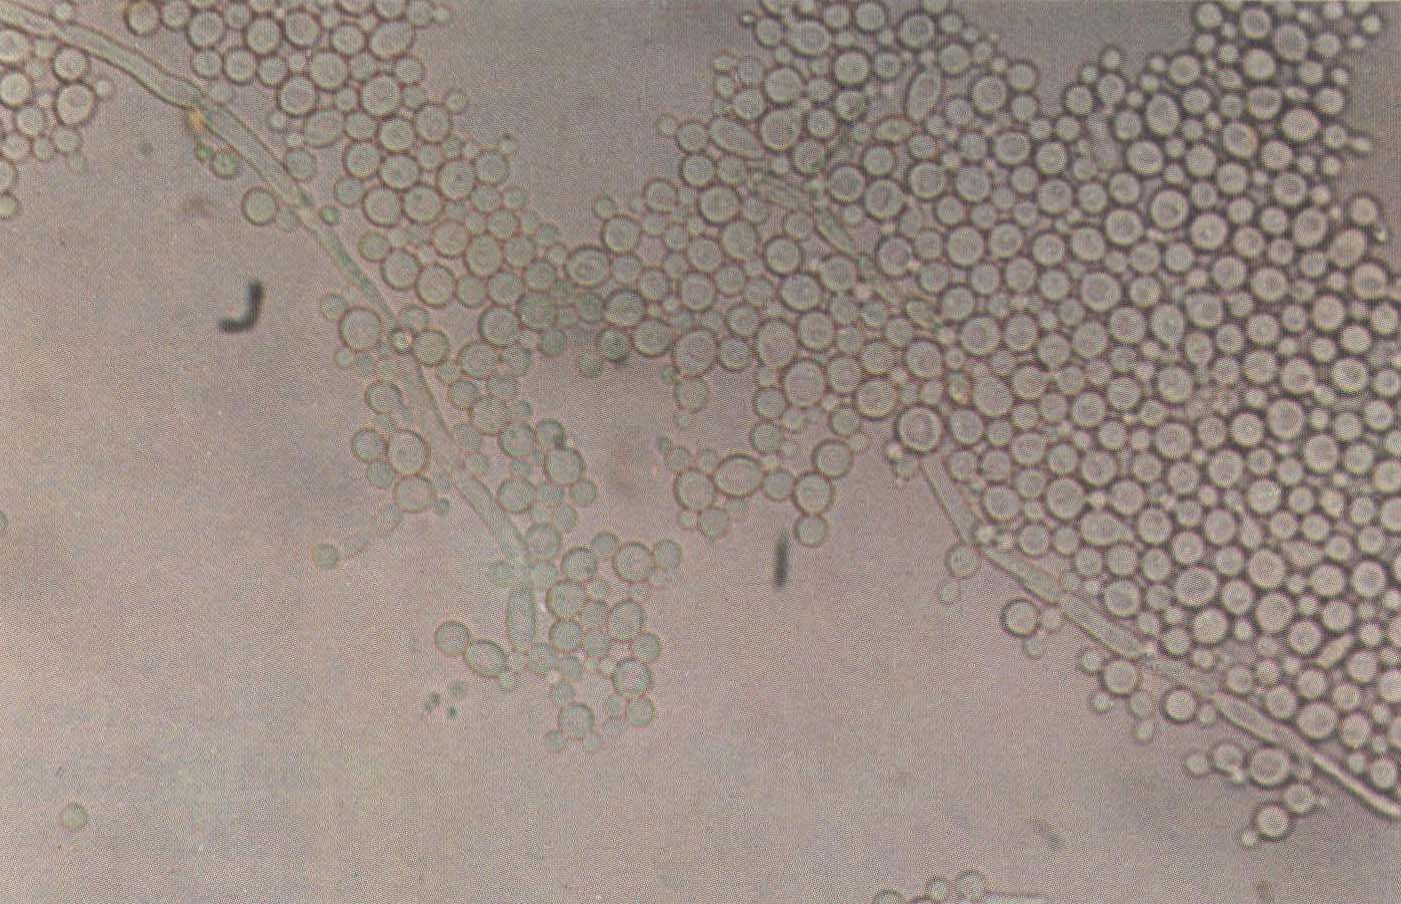 白色念珠菌孢子图片